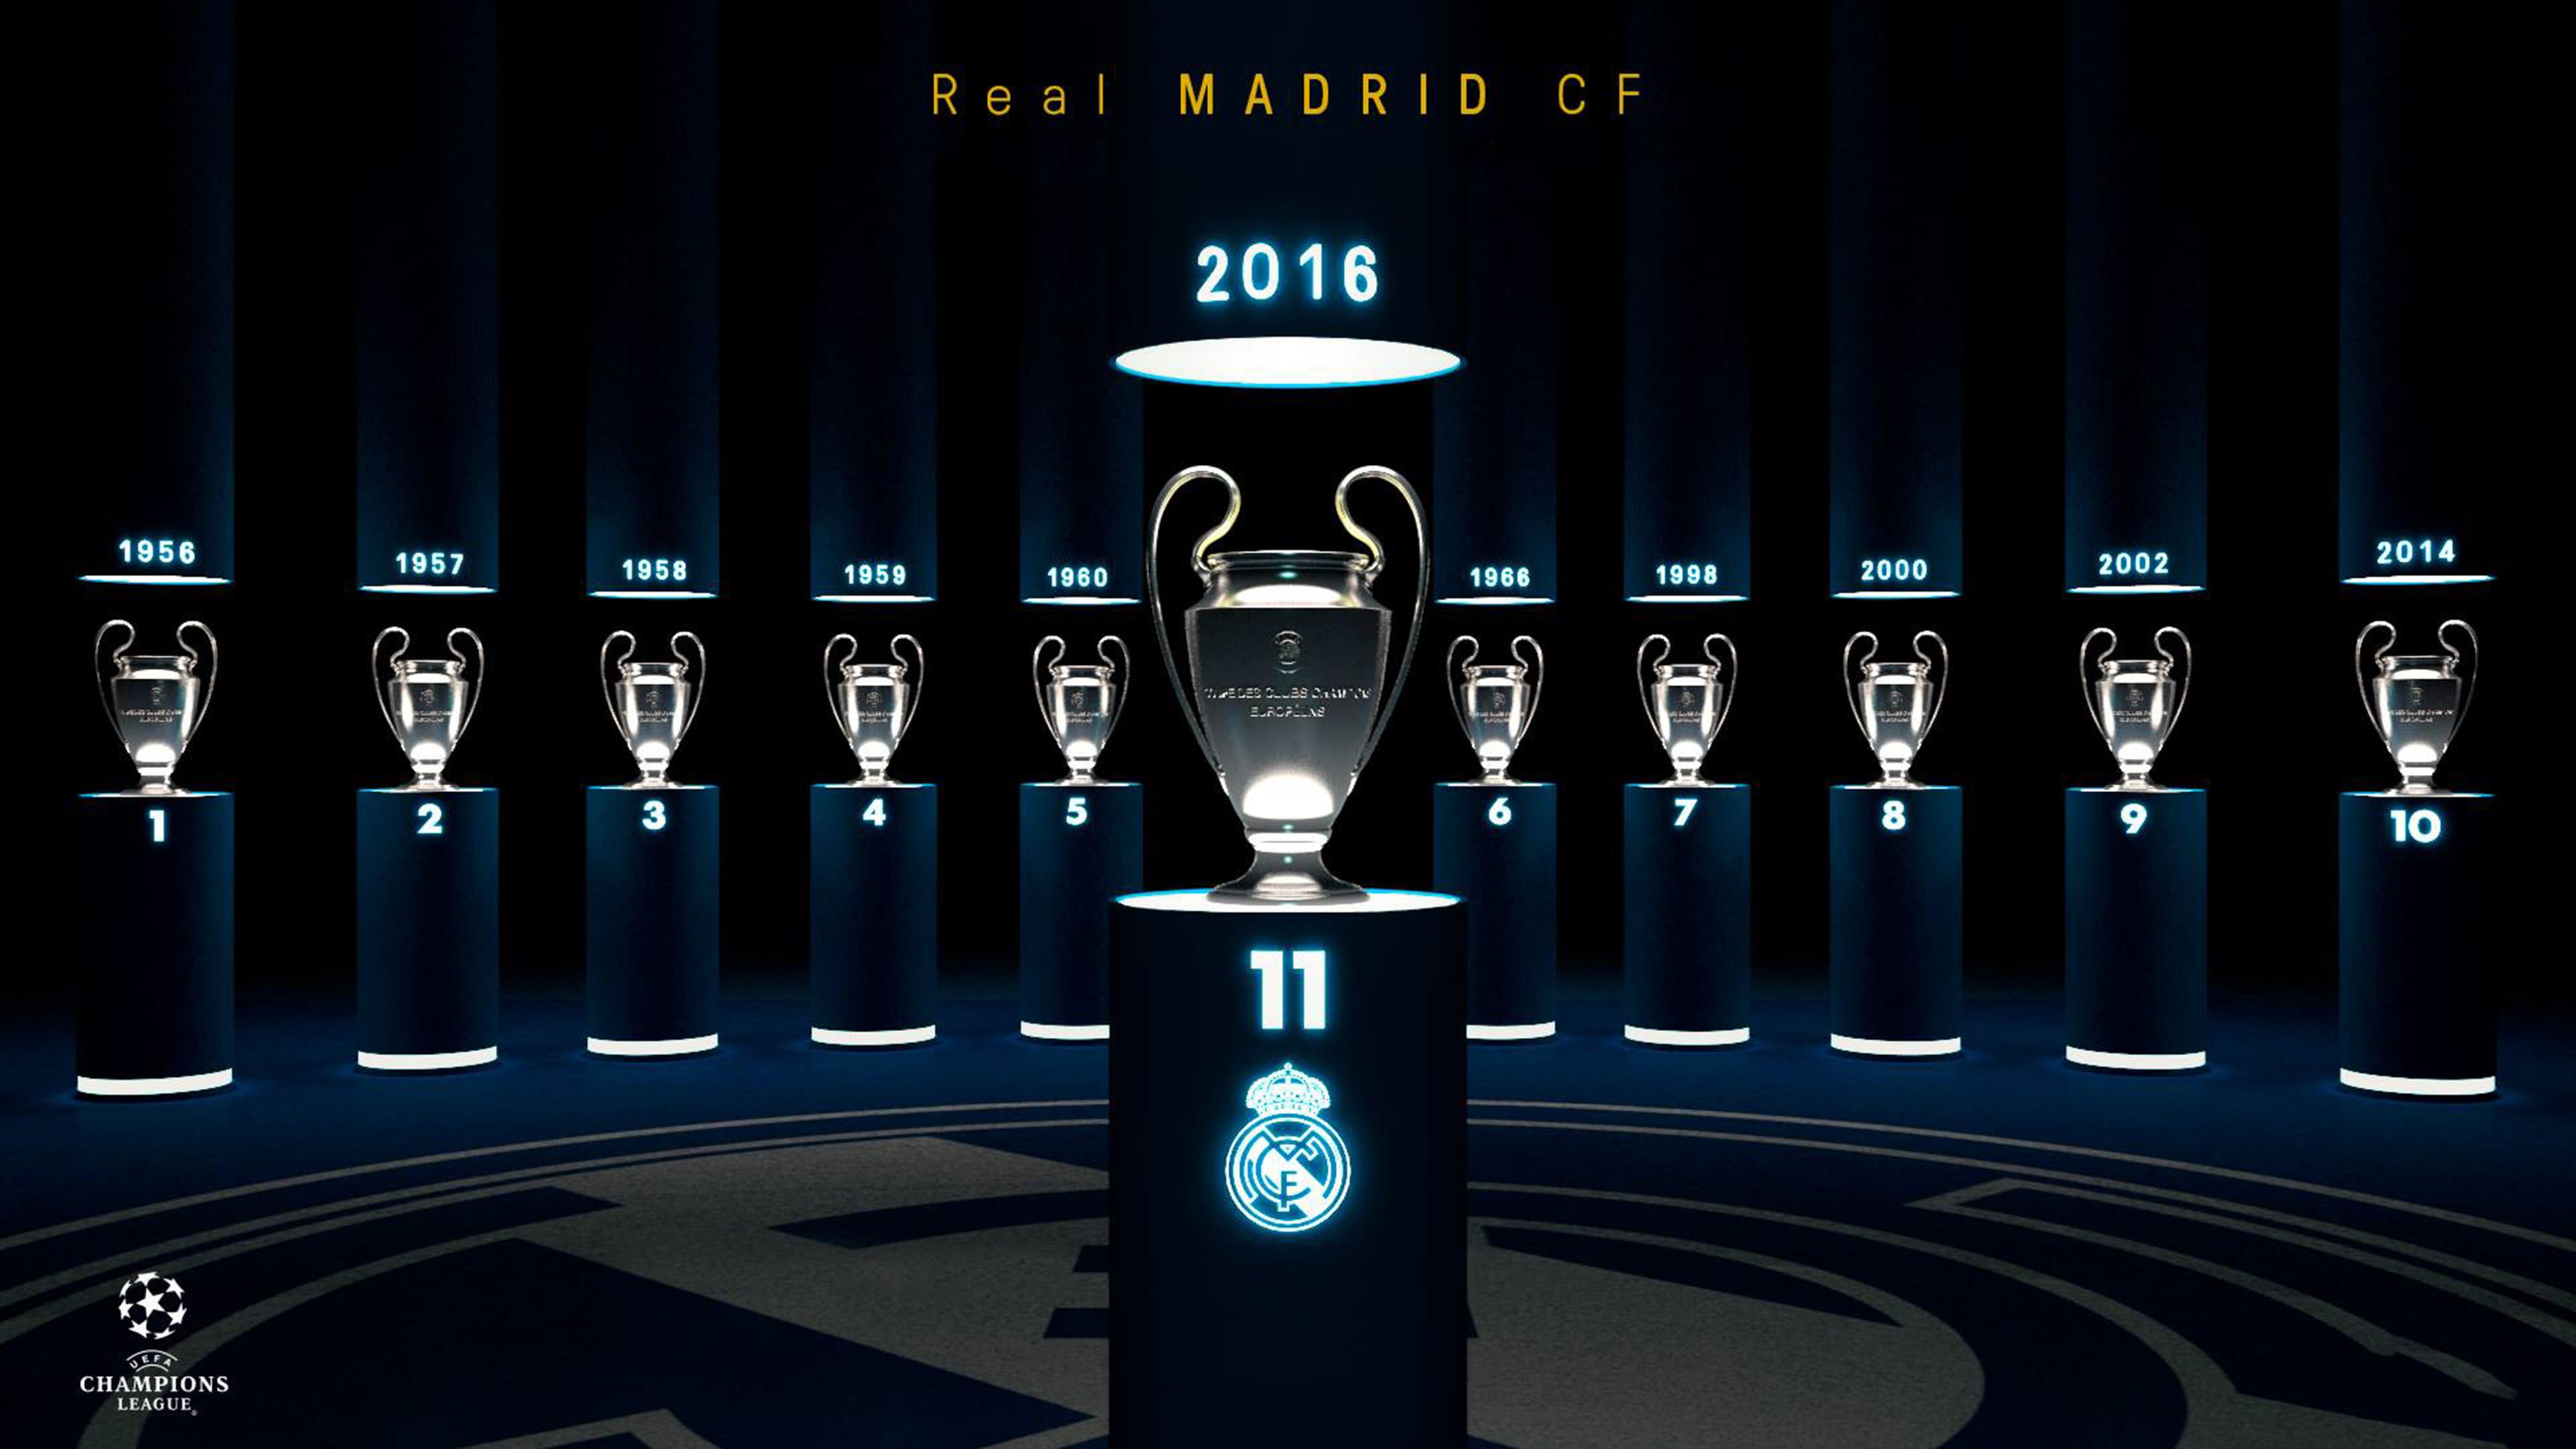 Cảm nhận trọn vẹn không khí sôi động của sân Bernabeu mỗi lúc Real Madrid ra sân trên thiết bị của bạn. Hình nền Real Madrid 4K giúp cho bạn đắm chìm trong niềm tin vào đội bóng yêu thích và mang lại niềm tự hào về sự kiện lịch sử của Real Madrid.